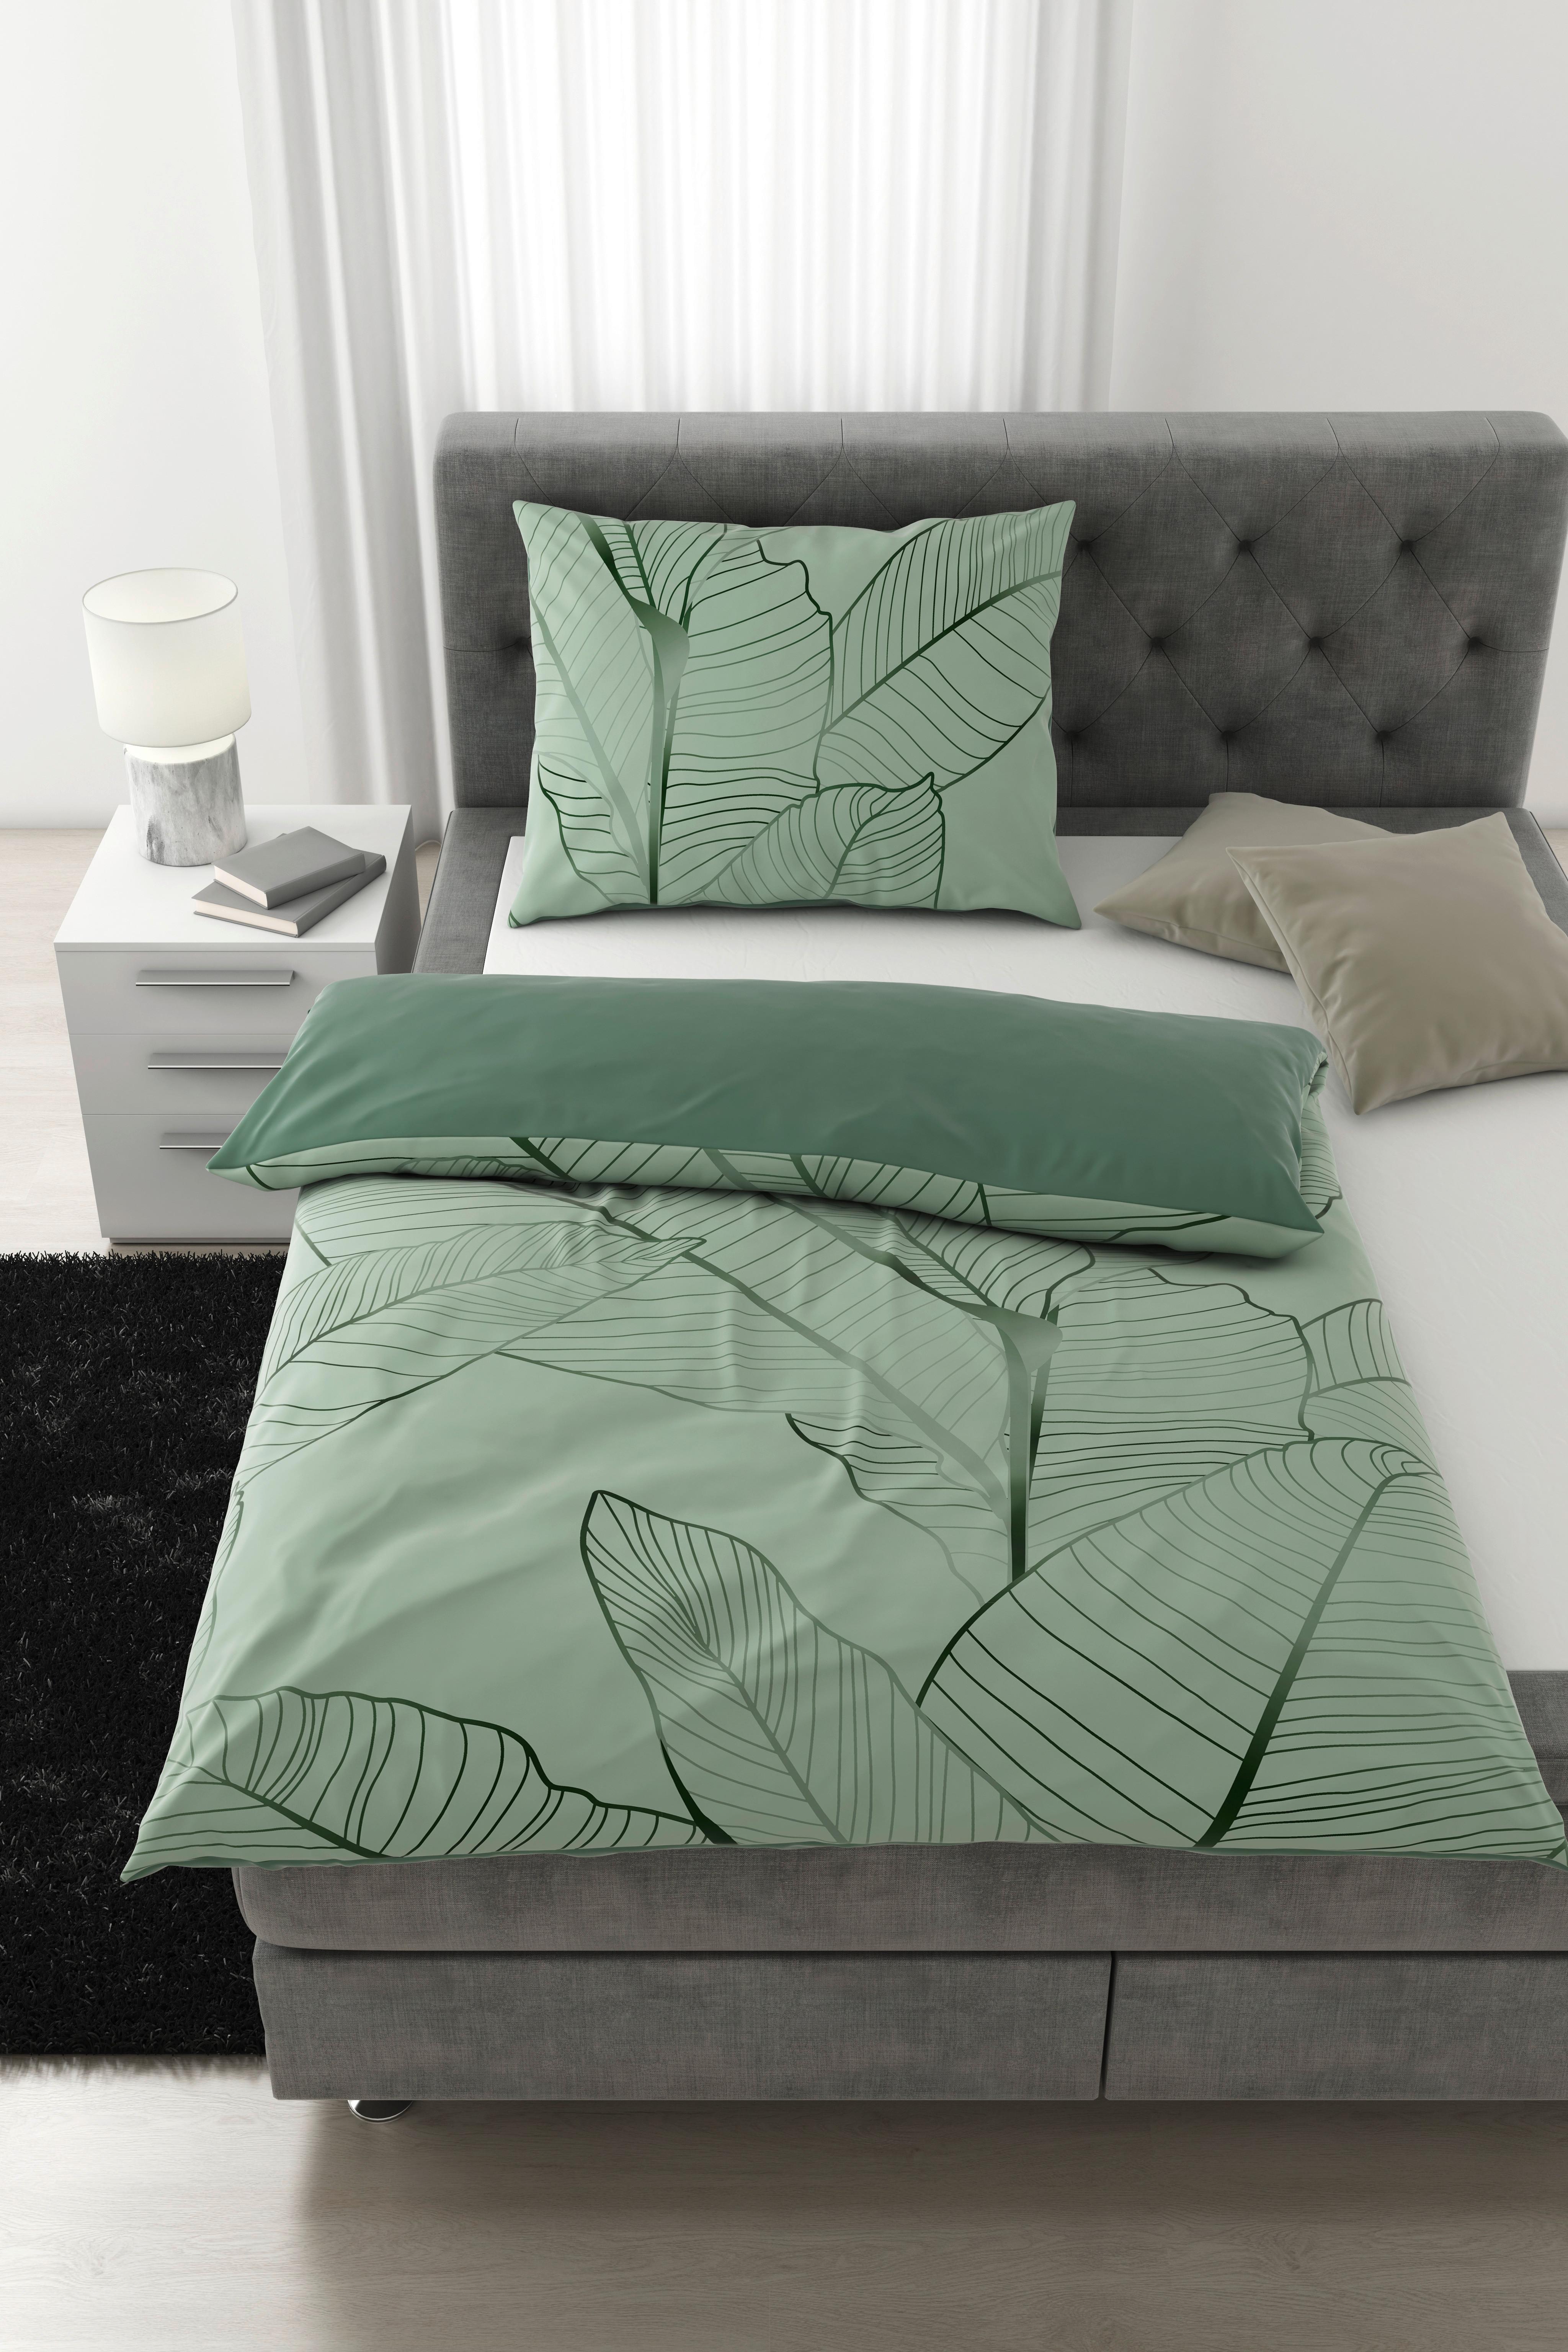 Povlečení Paloma Wende, 140/200cm - zelená, Moderní, textil (140/200cm) - Premium Living